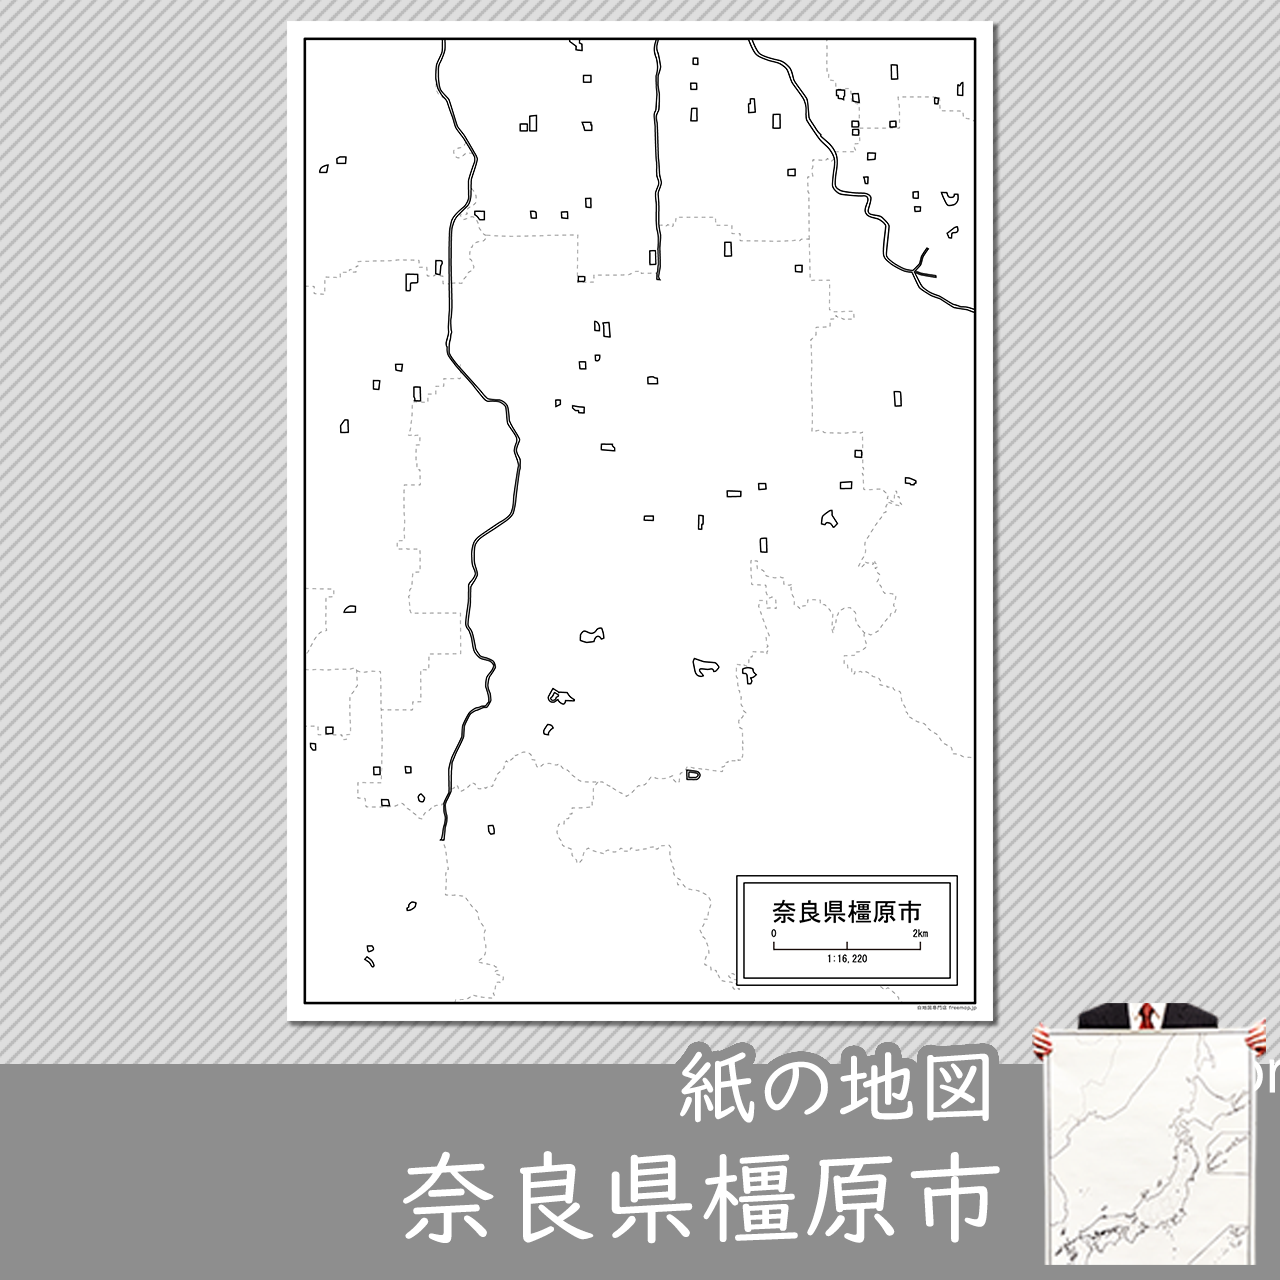 橿原市の紙の白地図のサムネイル